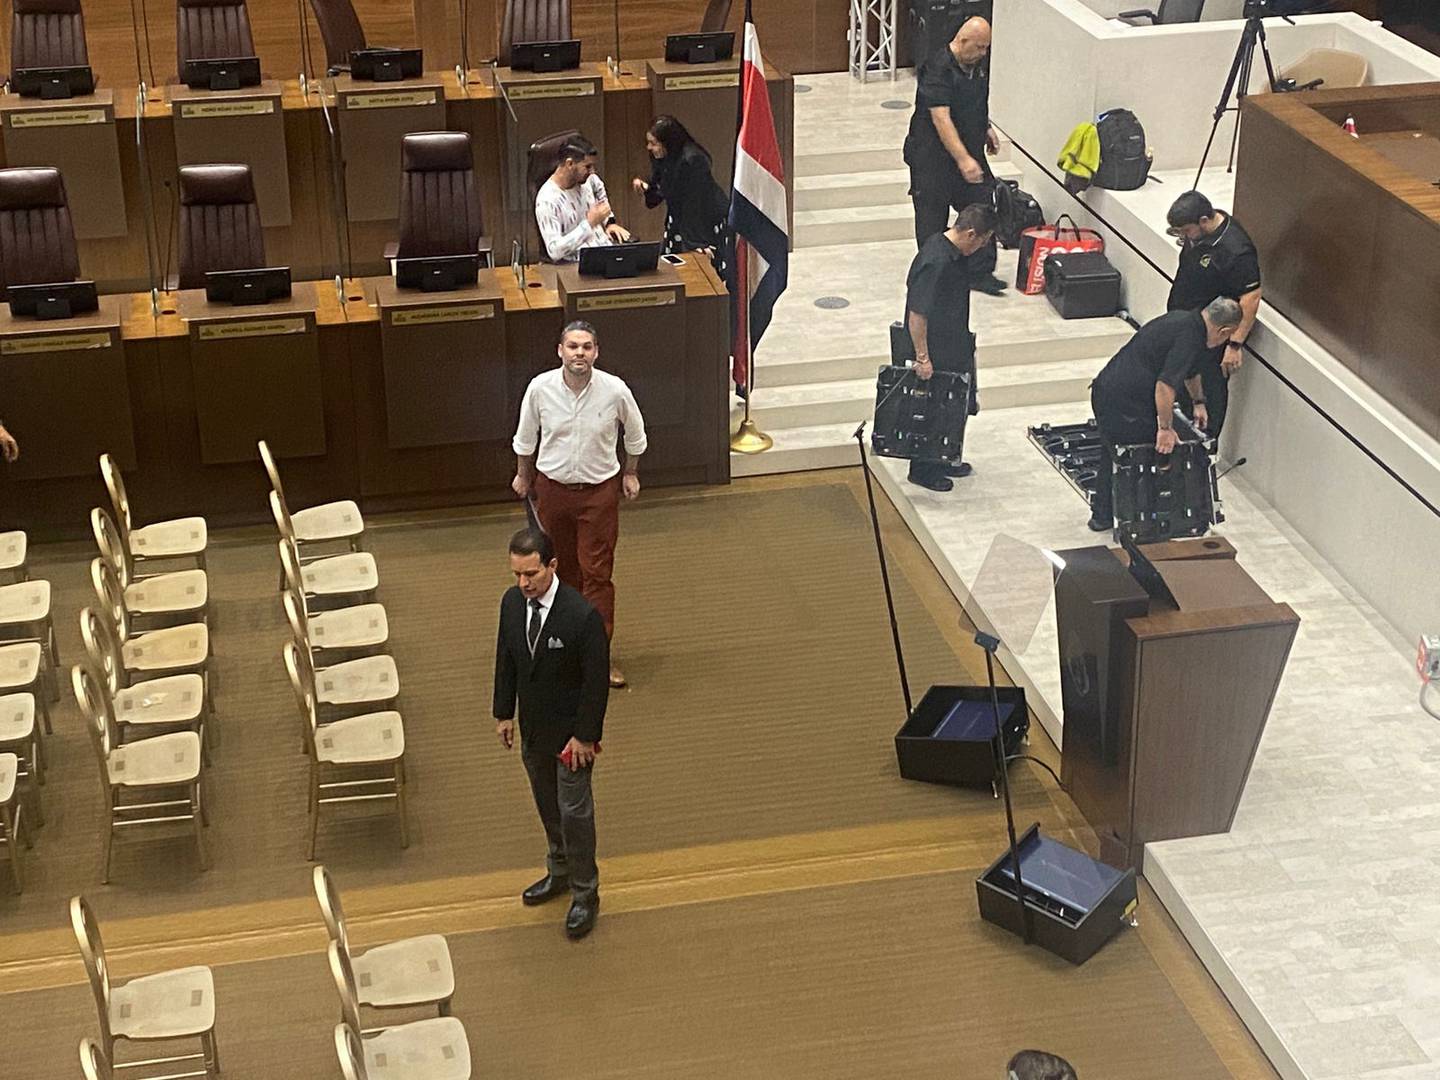 El ministro de Comunicación, Jorge Rodríguez (camisa blanca y pantalón rojo), supervisó la instalación de los equipos en el plenario legislativo, previo a que el presidente Rodrigo Chaves ensayara su discurso. Foto: Lucía Astorga